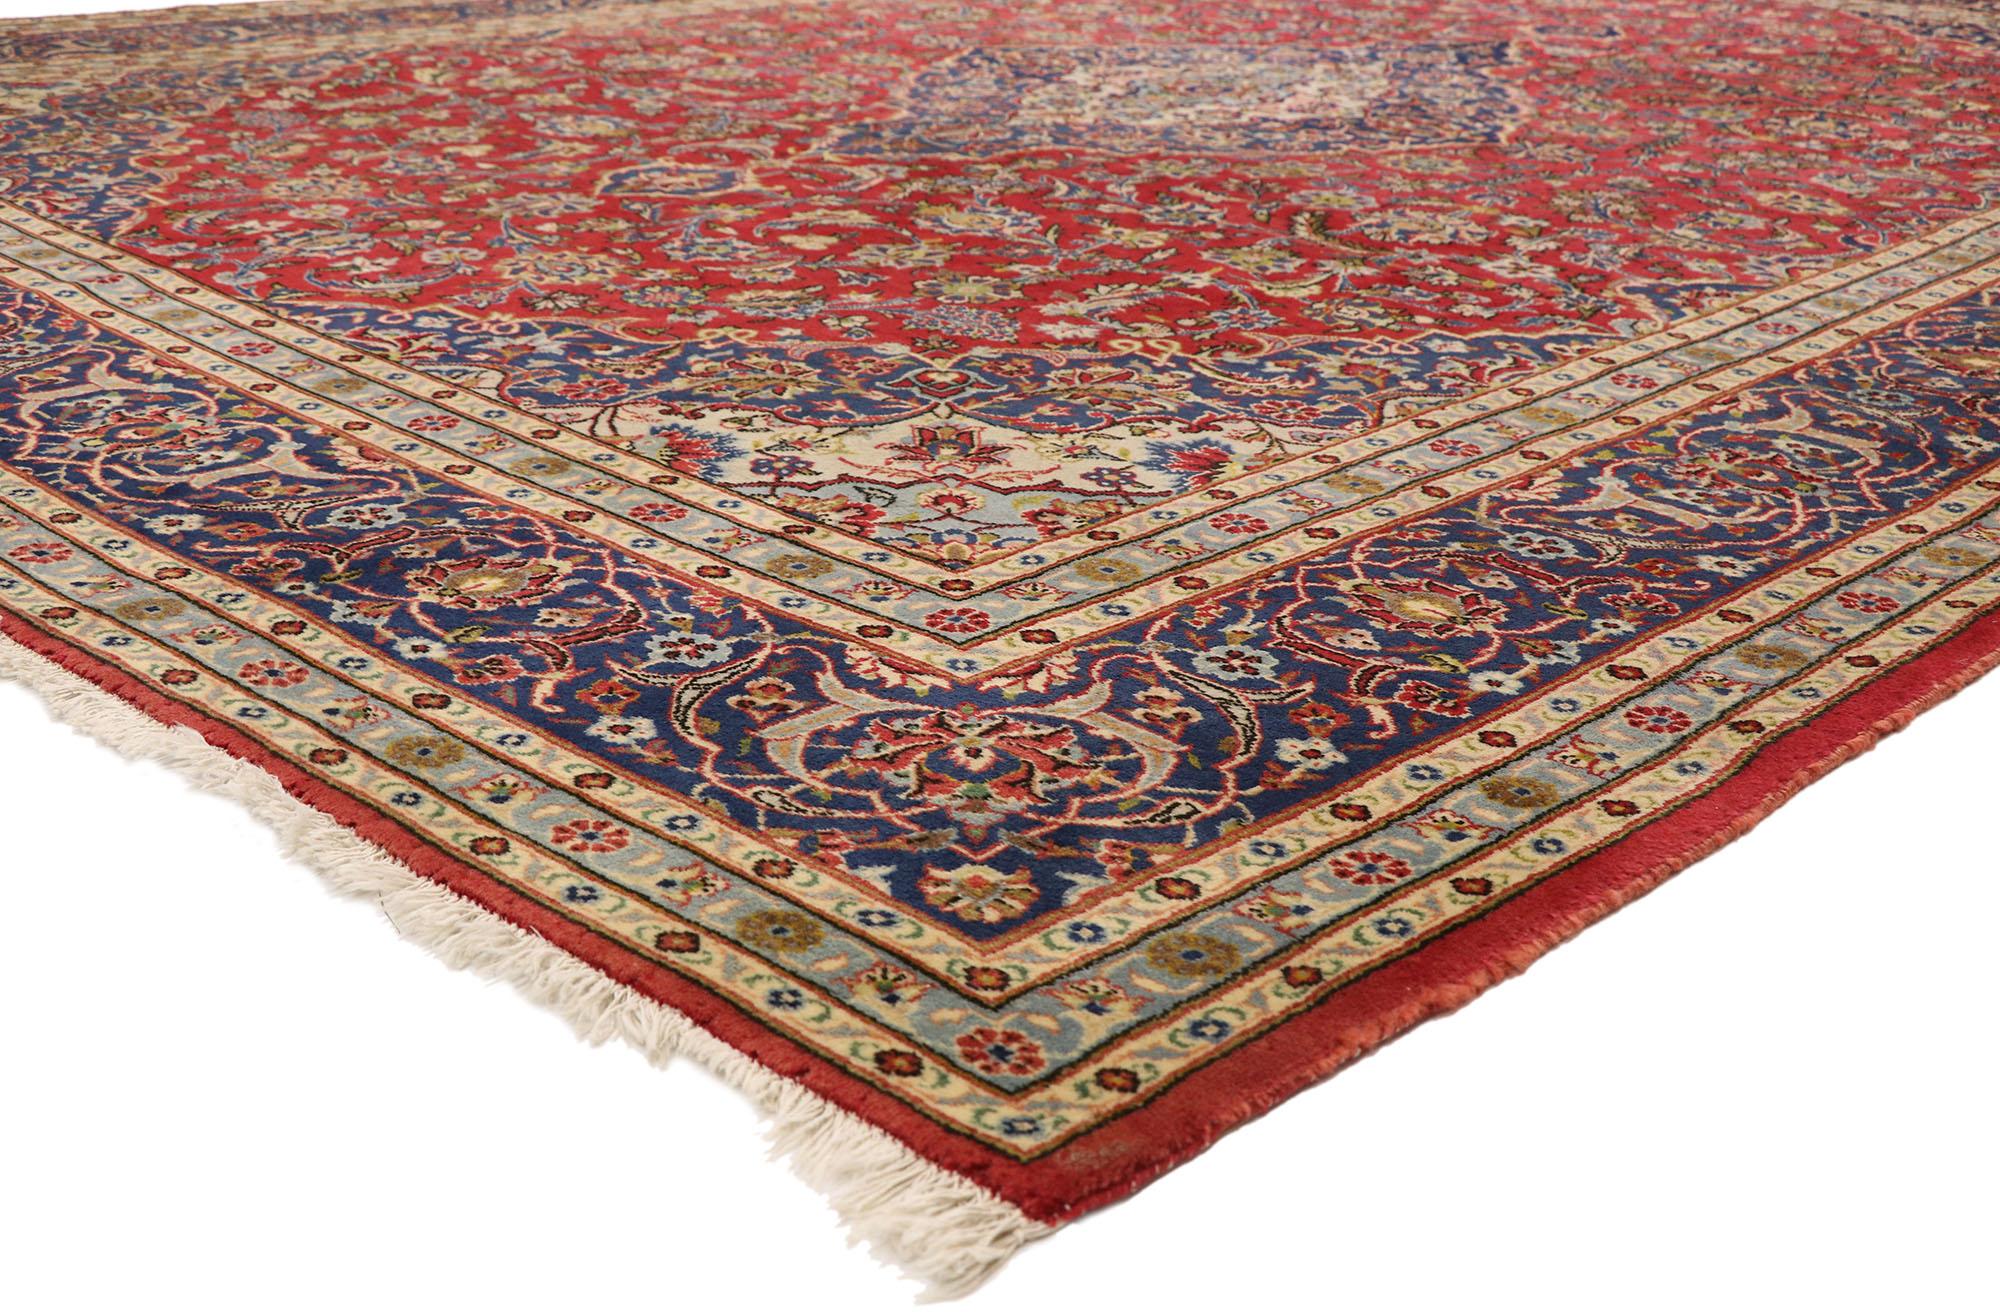 77420 Tapis persan vintage Kashan avec style colonial américain fédéral 09'08 x 12'11. Ce tapis persan vintage en laine nouée à la main, de style traditionnel, présente un médaillon lobé en forme de diamant tricolore, ancré par des fleurons en forme